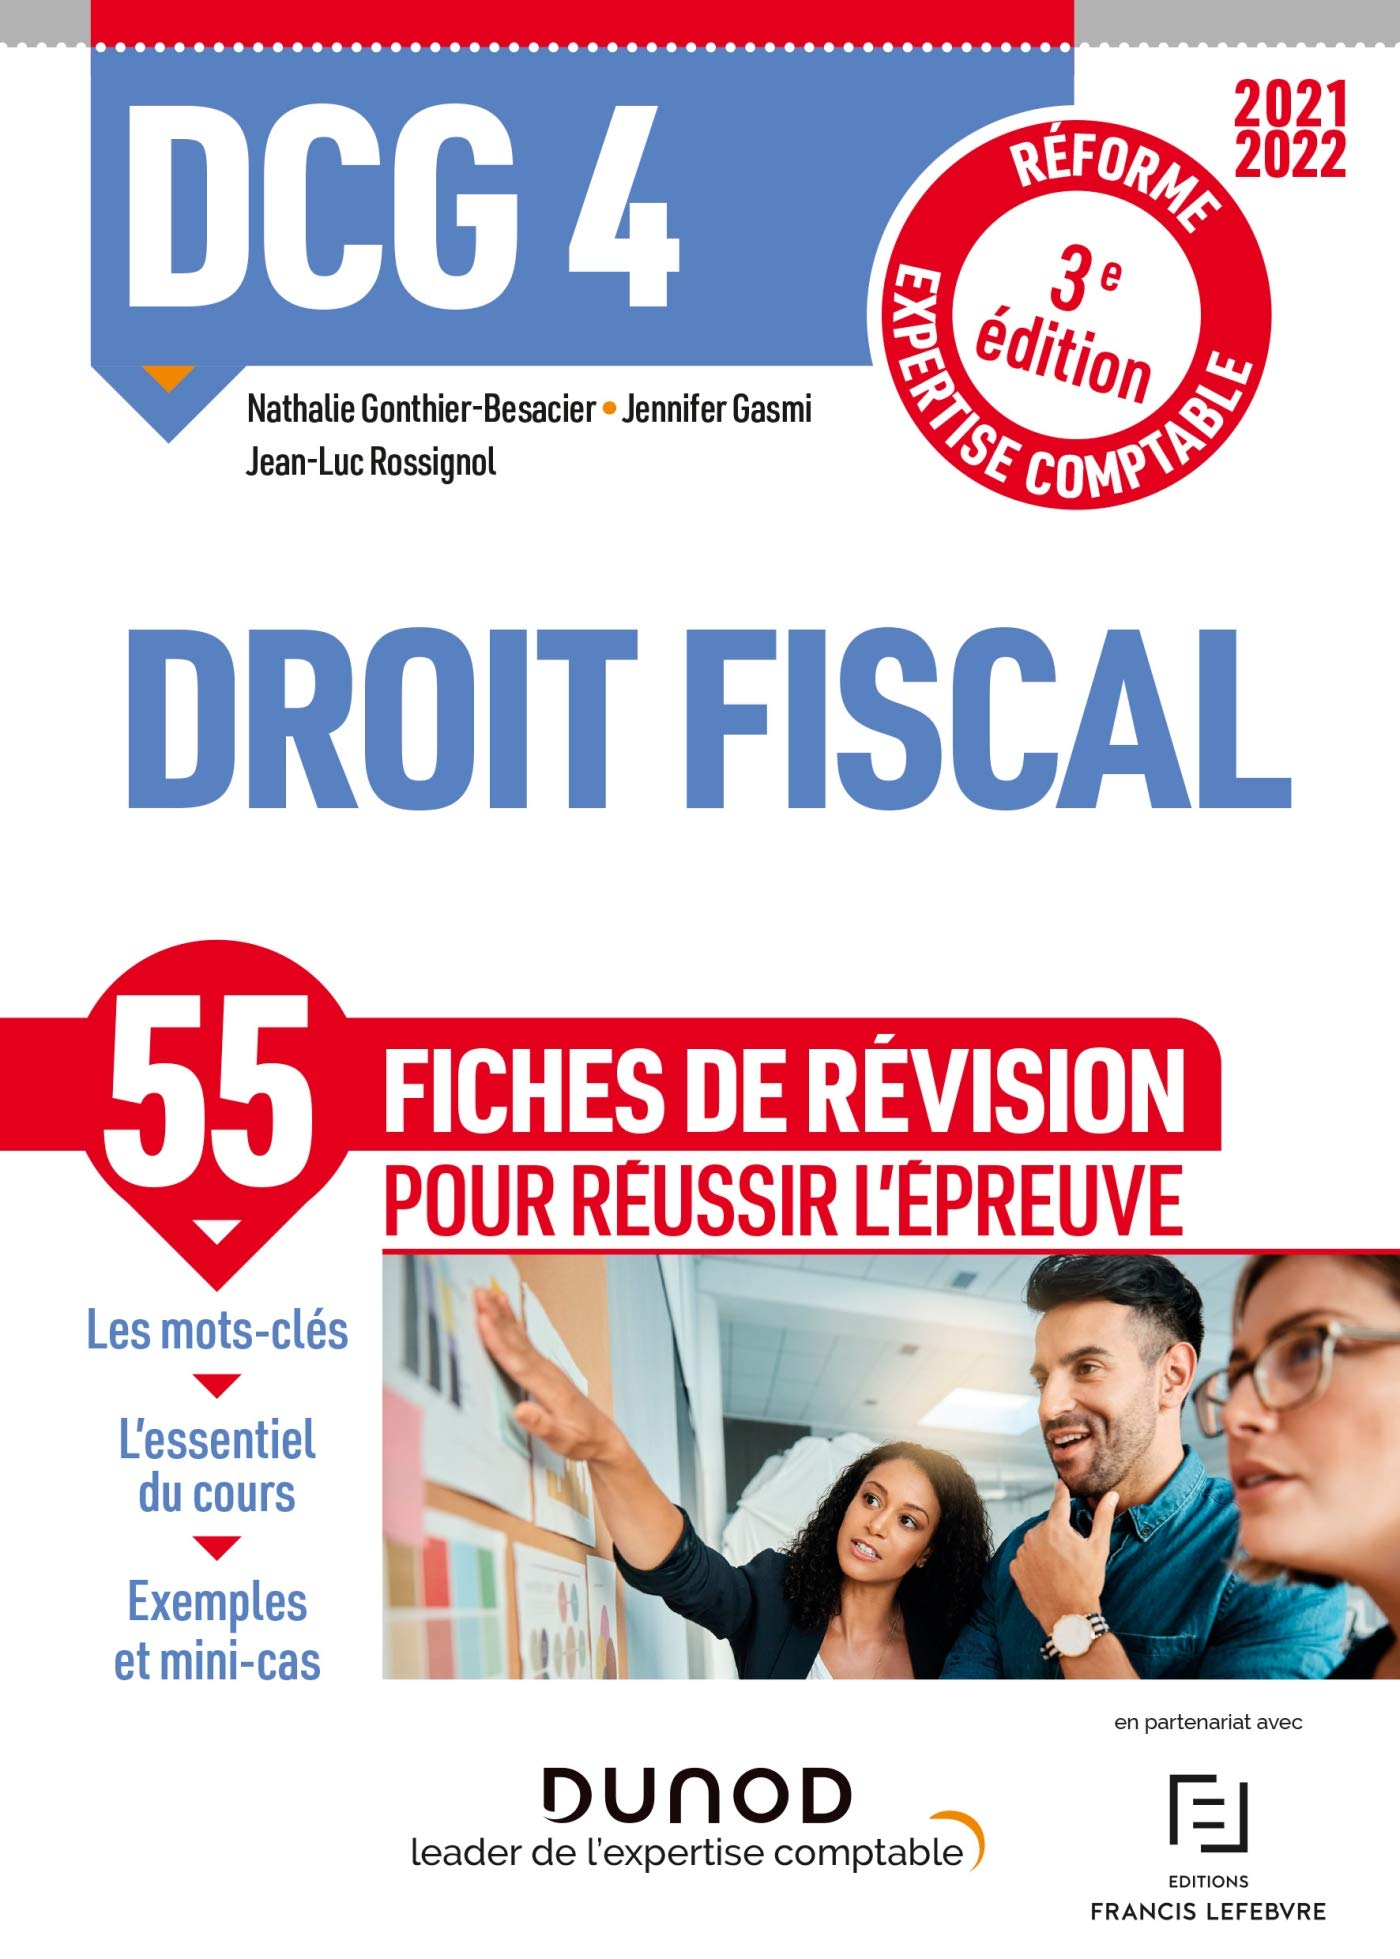 DCG 4, droit fiscal : 55 fiches de révision pour réussir l'épreuve : réforme expertise comptable, 20